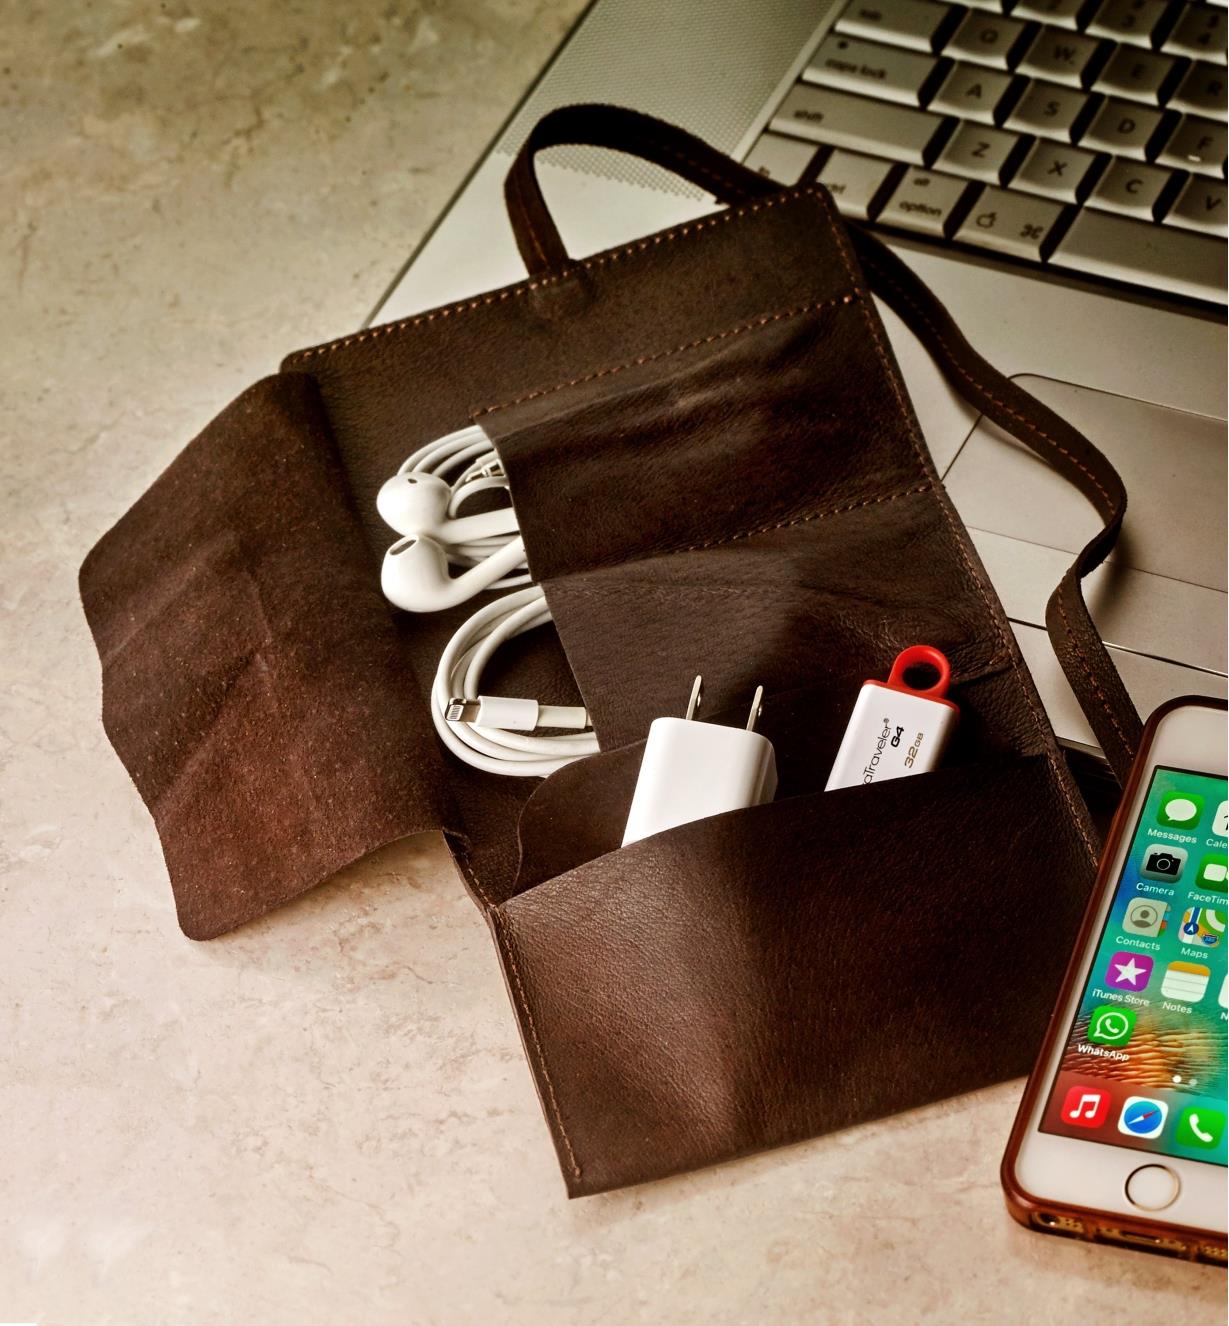 Étui en cuir contenant un câble de recharge, des écouteurs et une clé USB près d'un ordinateur portable et d'un téléphone intelligent